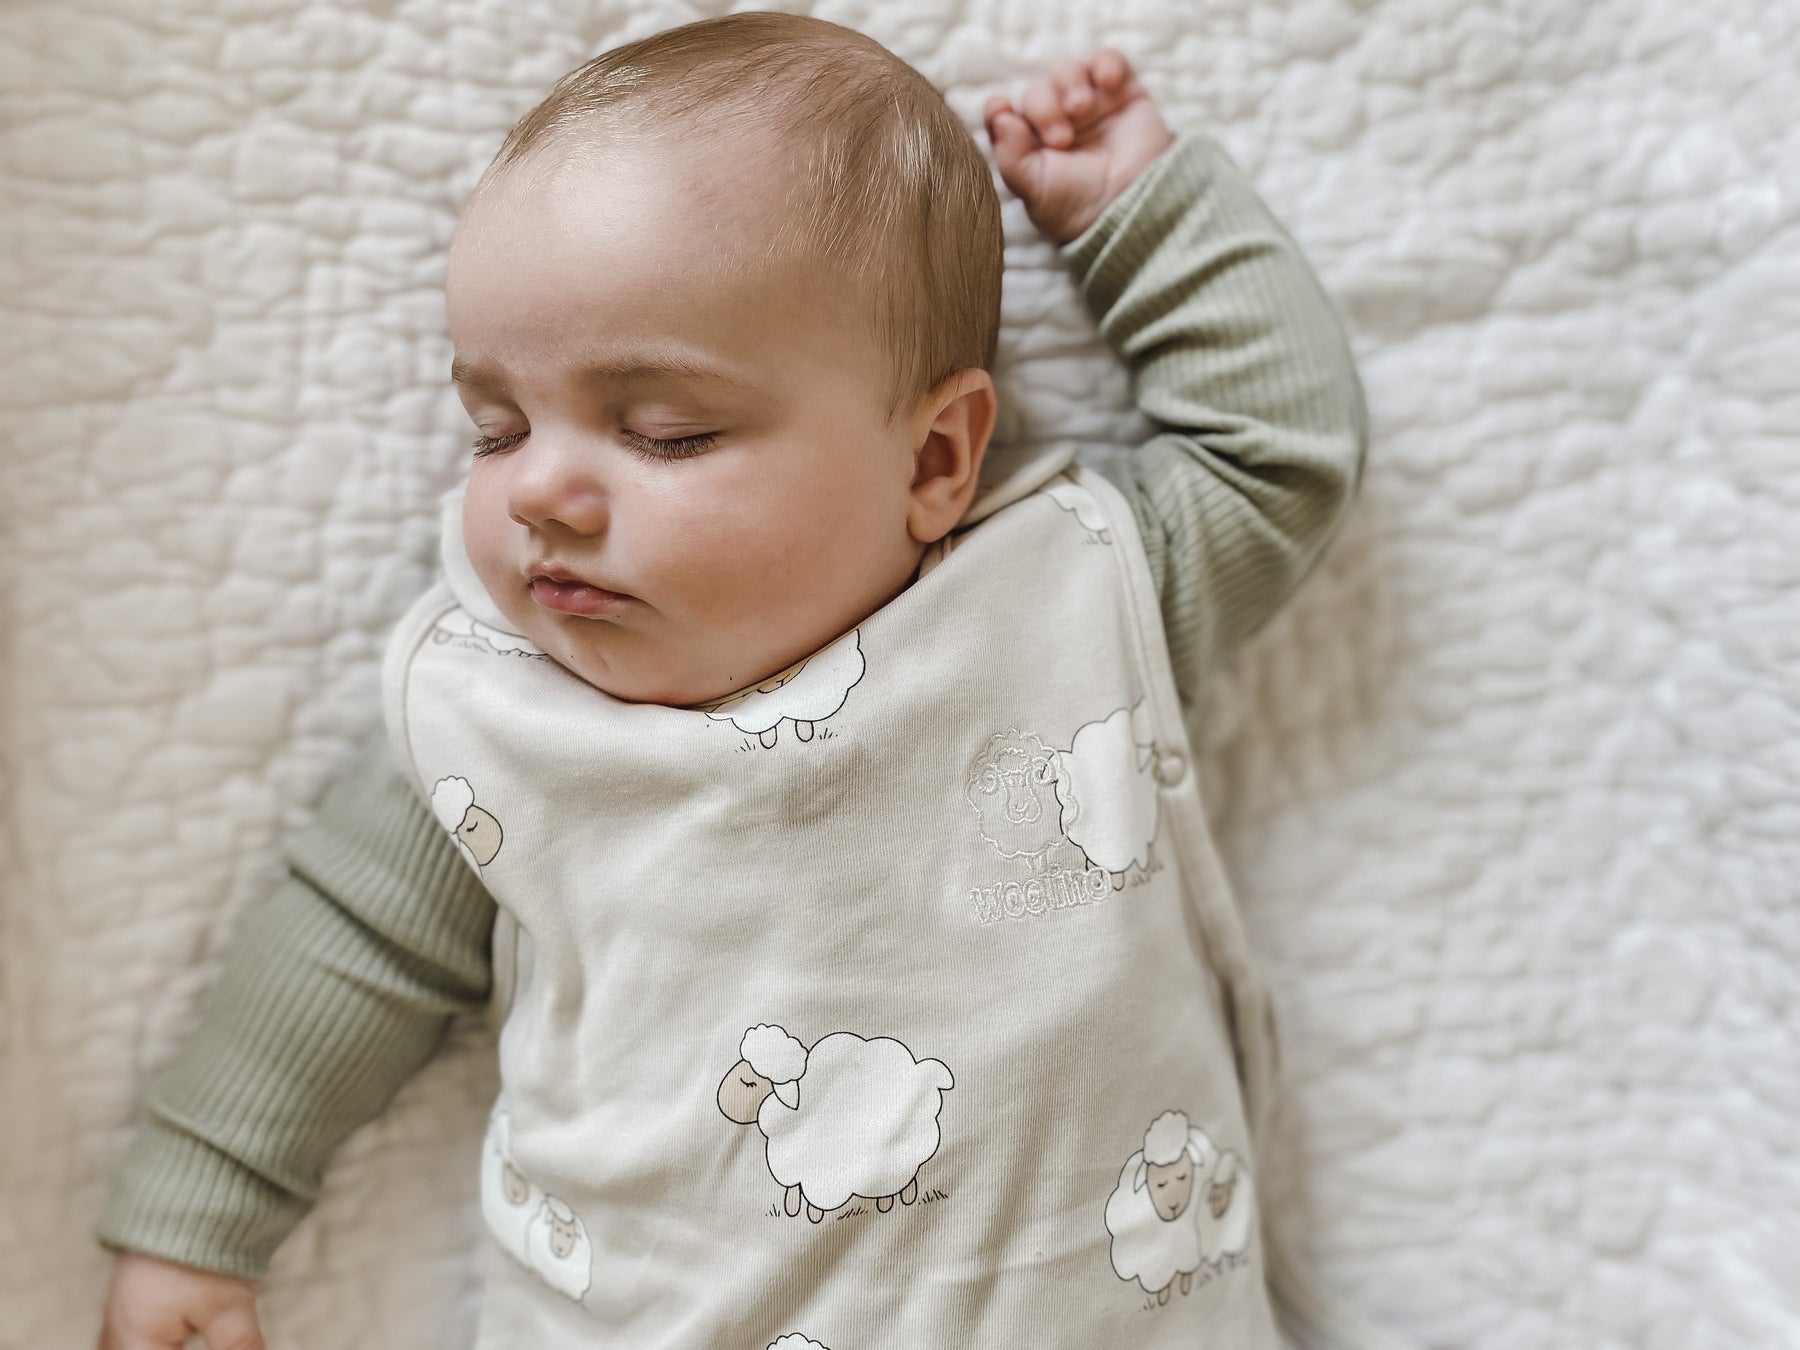 Baby sleeping in a Woolino 4 Season Ultimate Baby Sleep Bag in Sheep pattern.